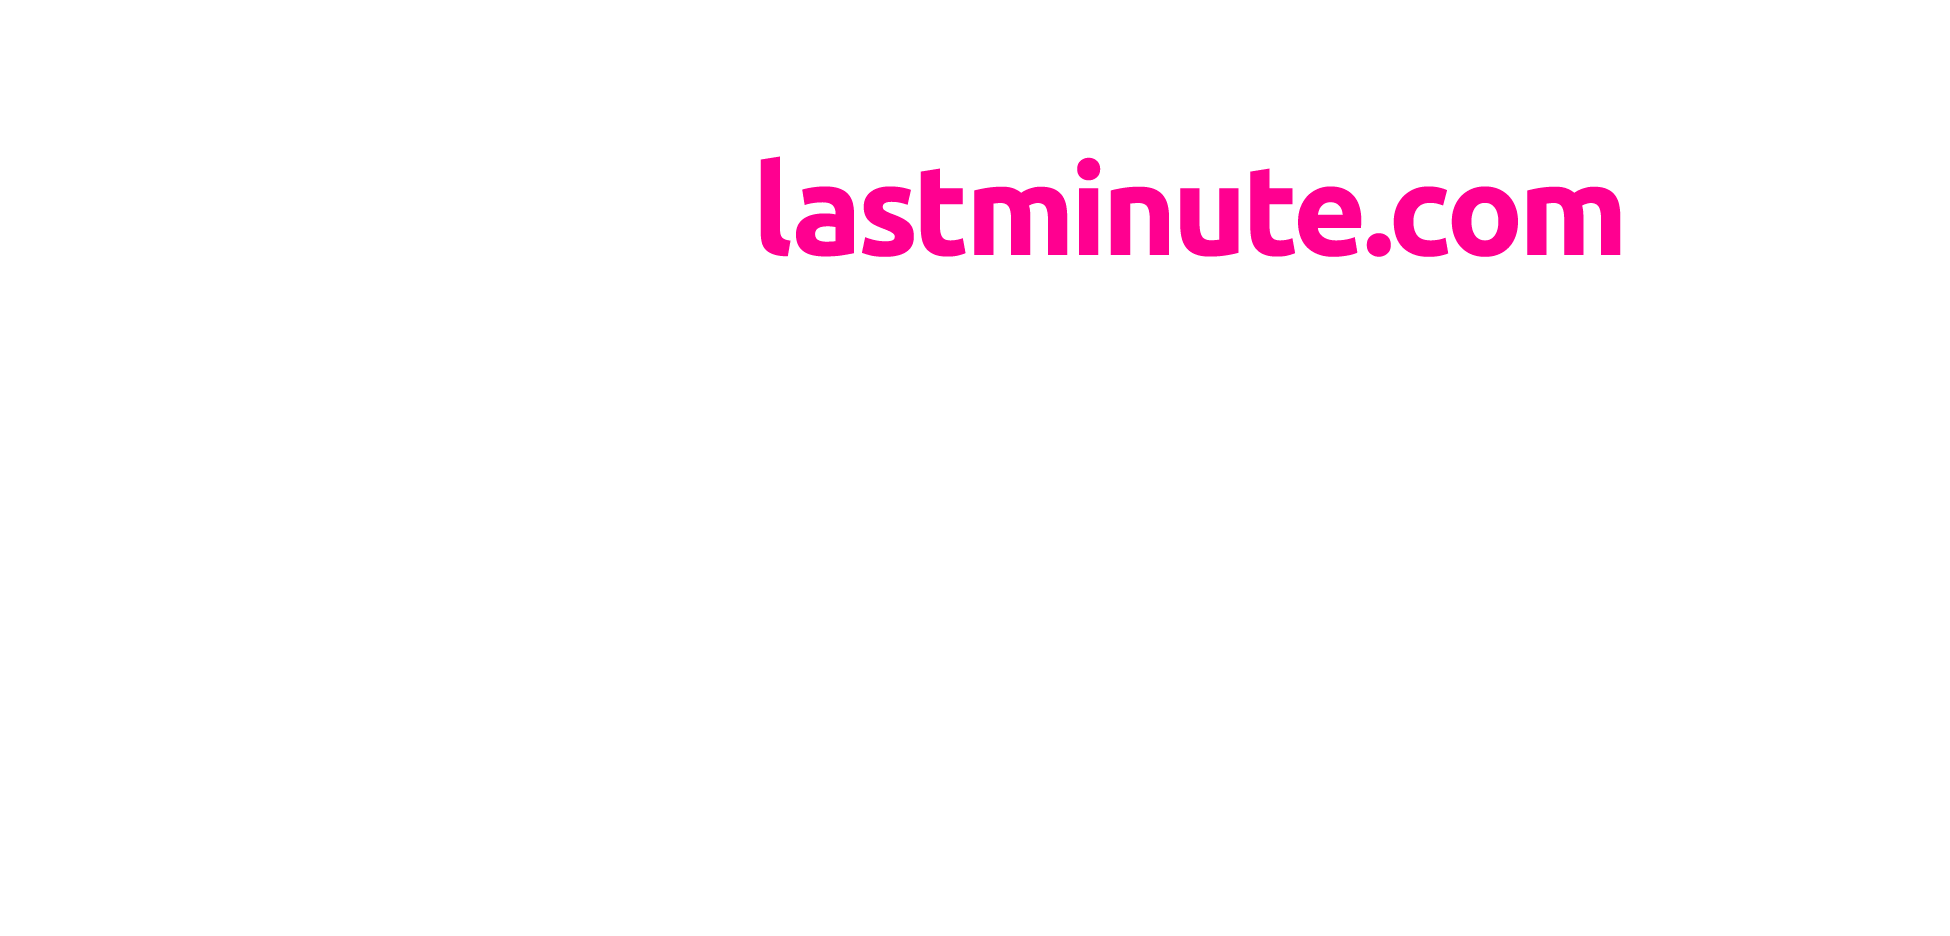 London Eye river cruise logo in white